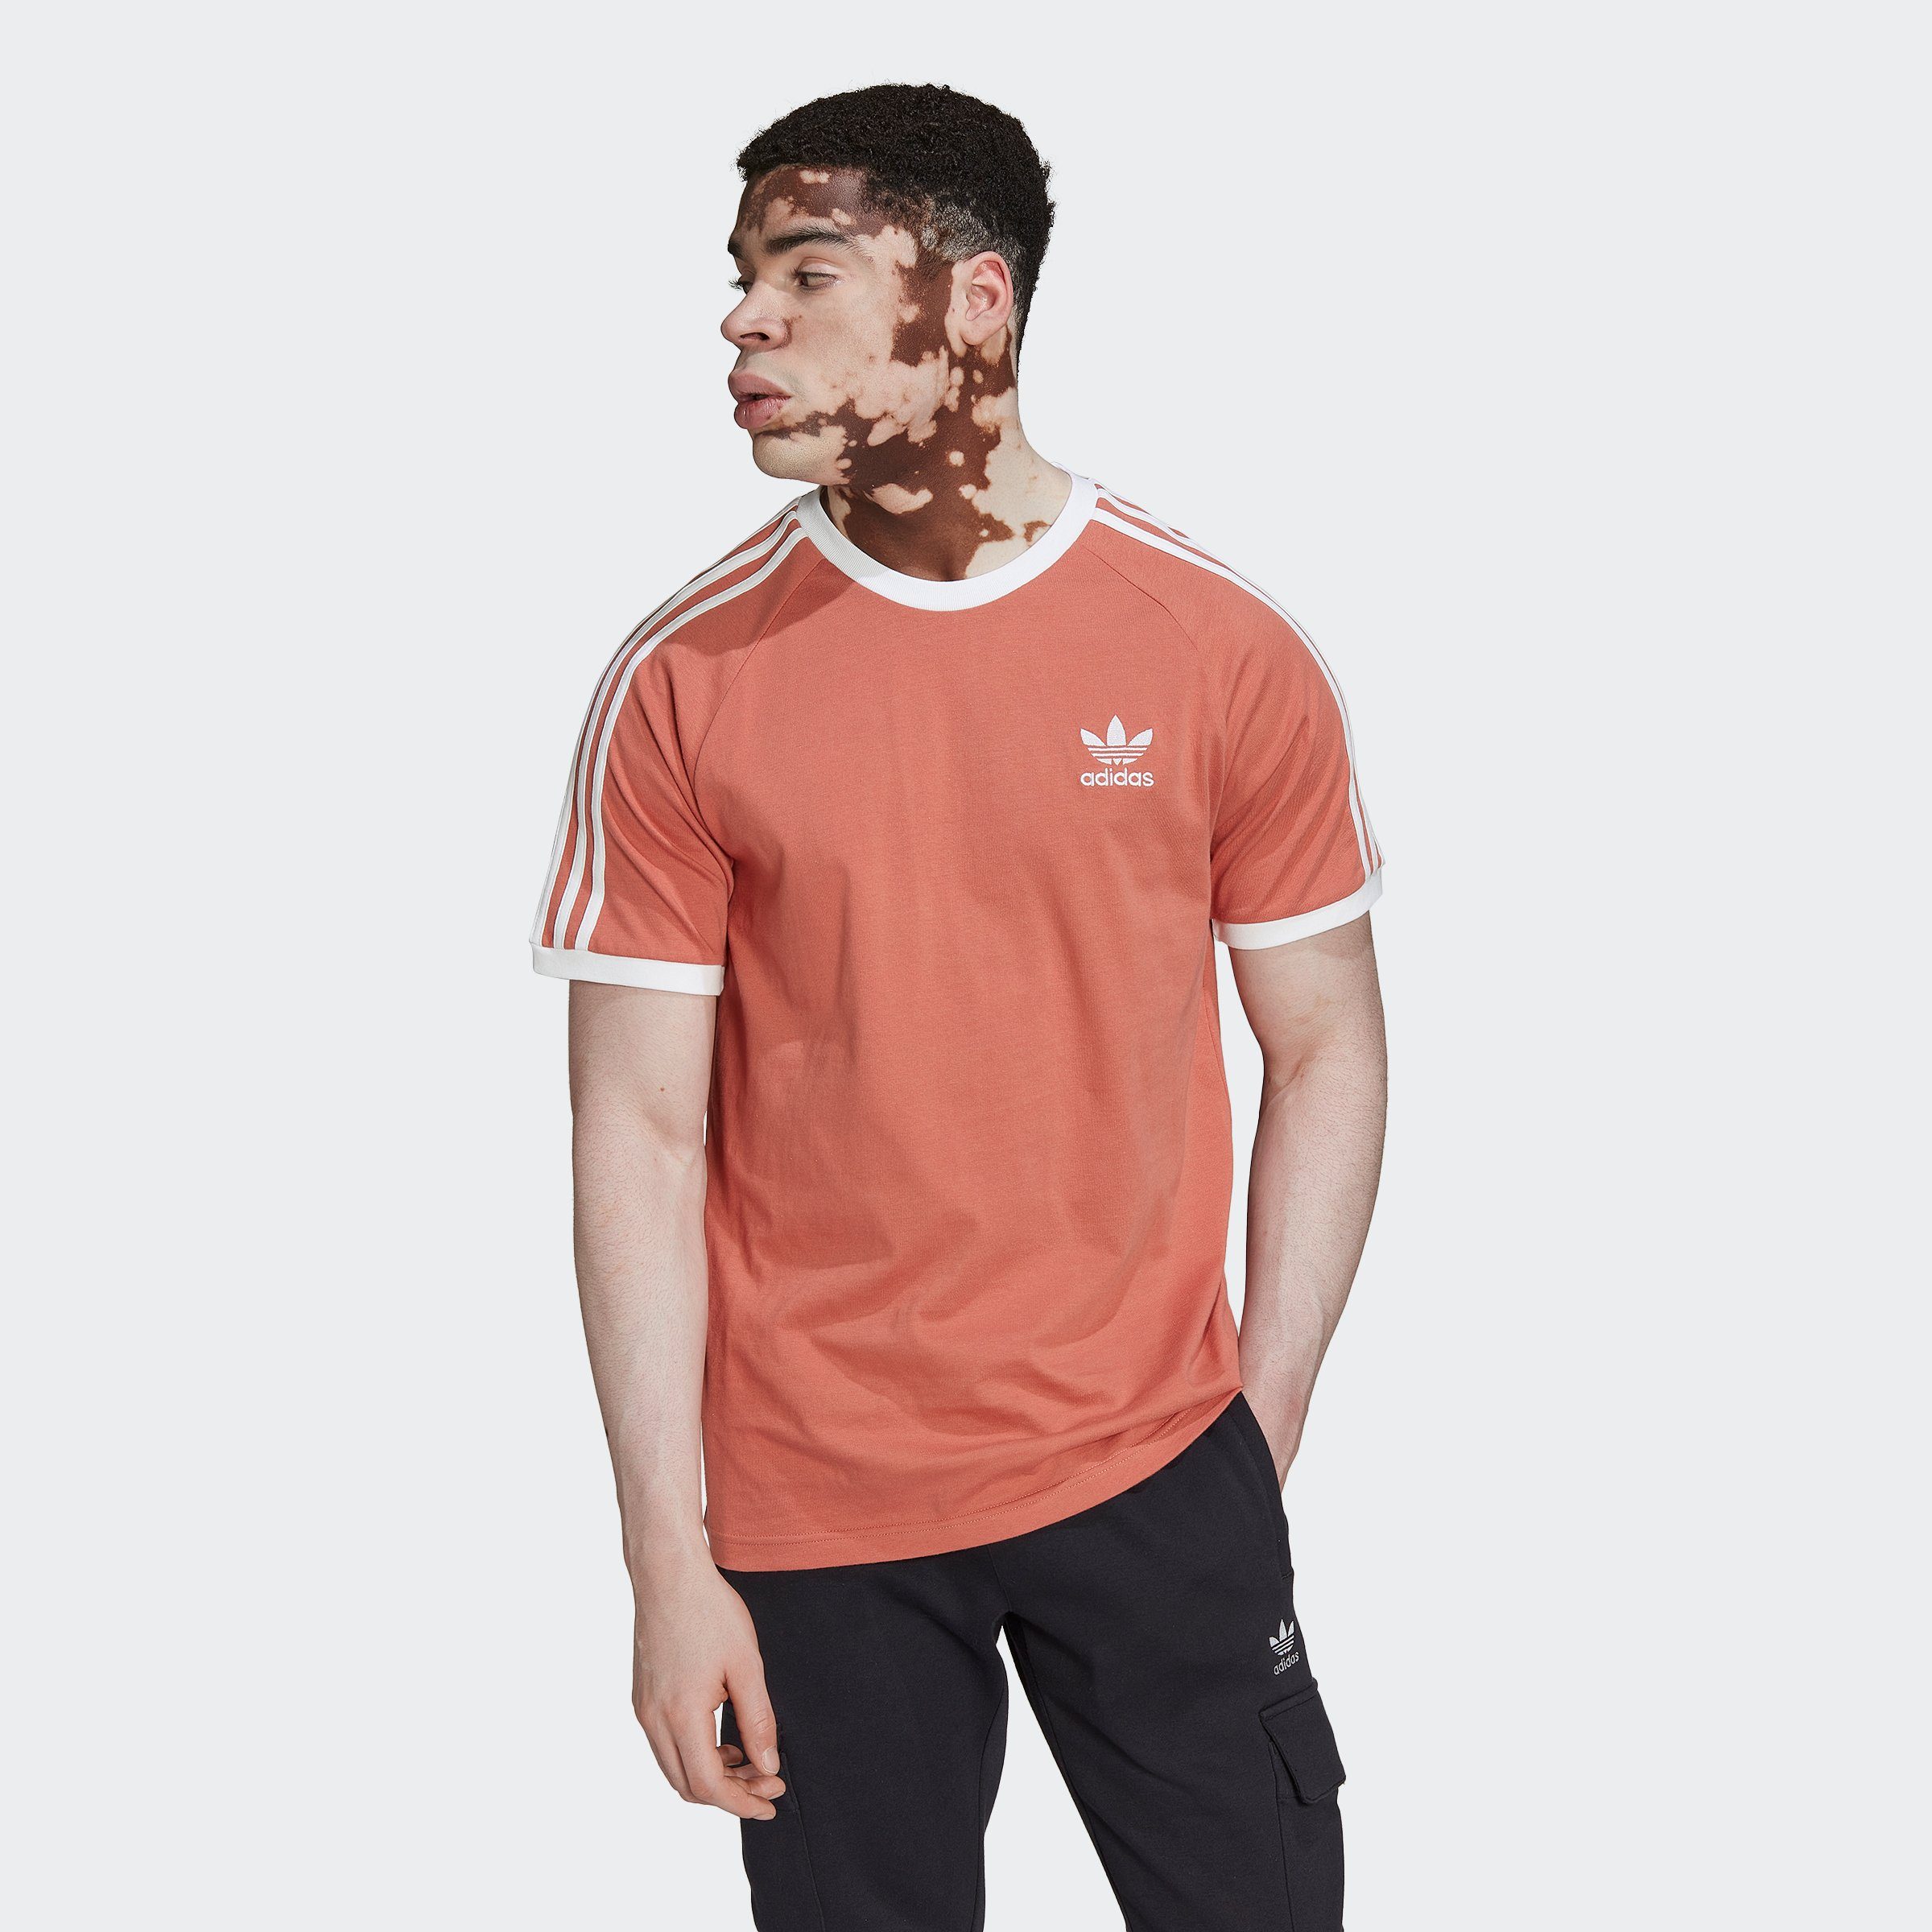 MAGEAR ADICOLOR Originals adidas T-Shirt CLASSICS 3-STREIFEN